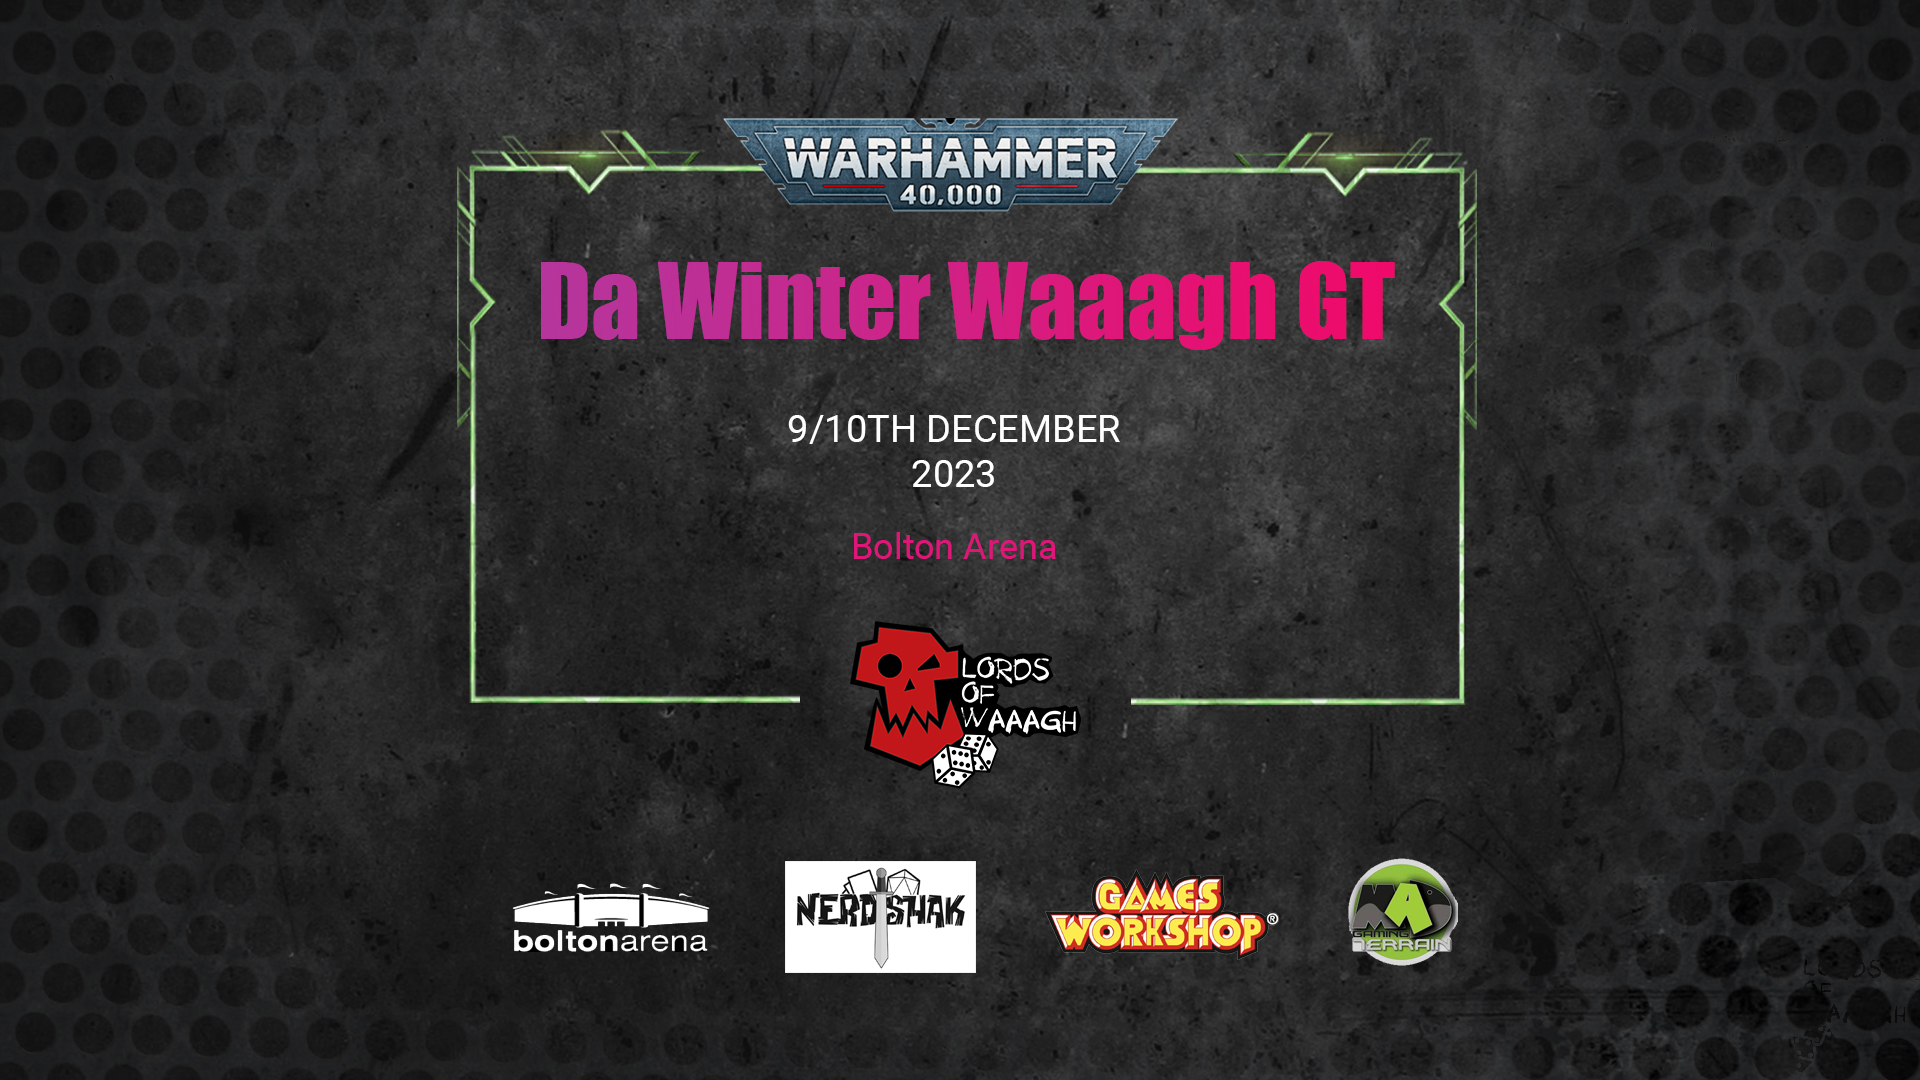 Da Winter Waaagh 2023